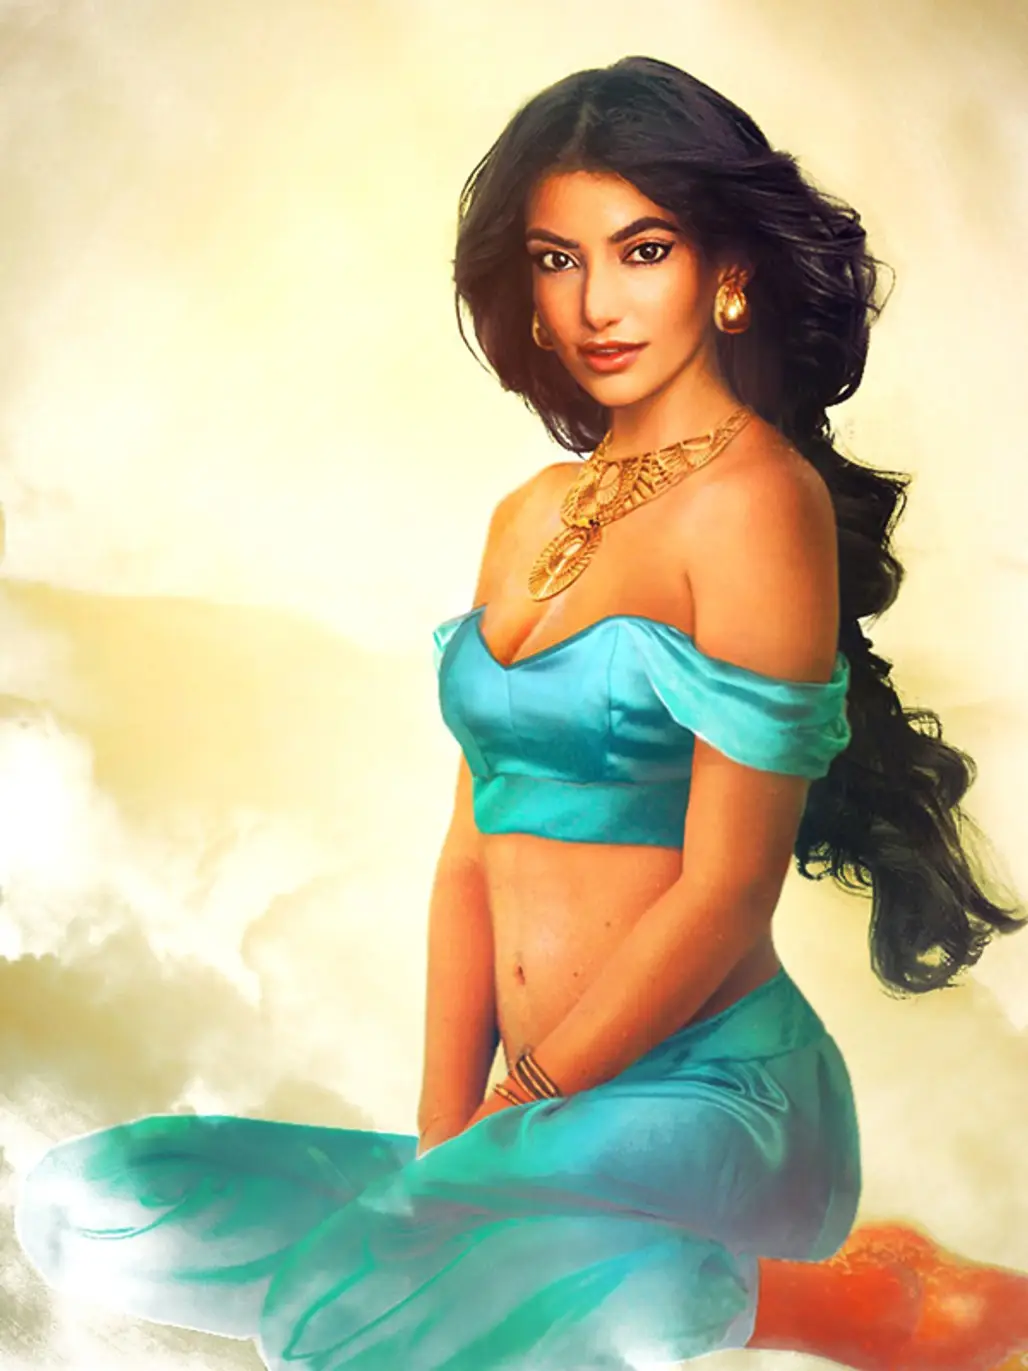 Jasmine (Aladdin): True Love is Prejudice-Free